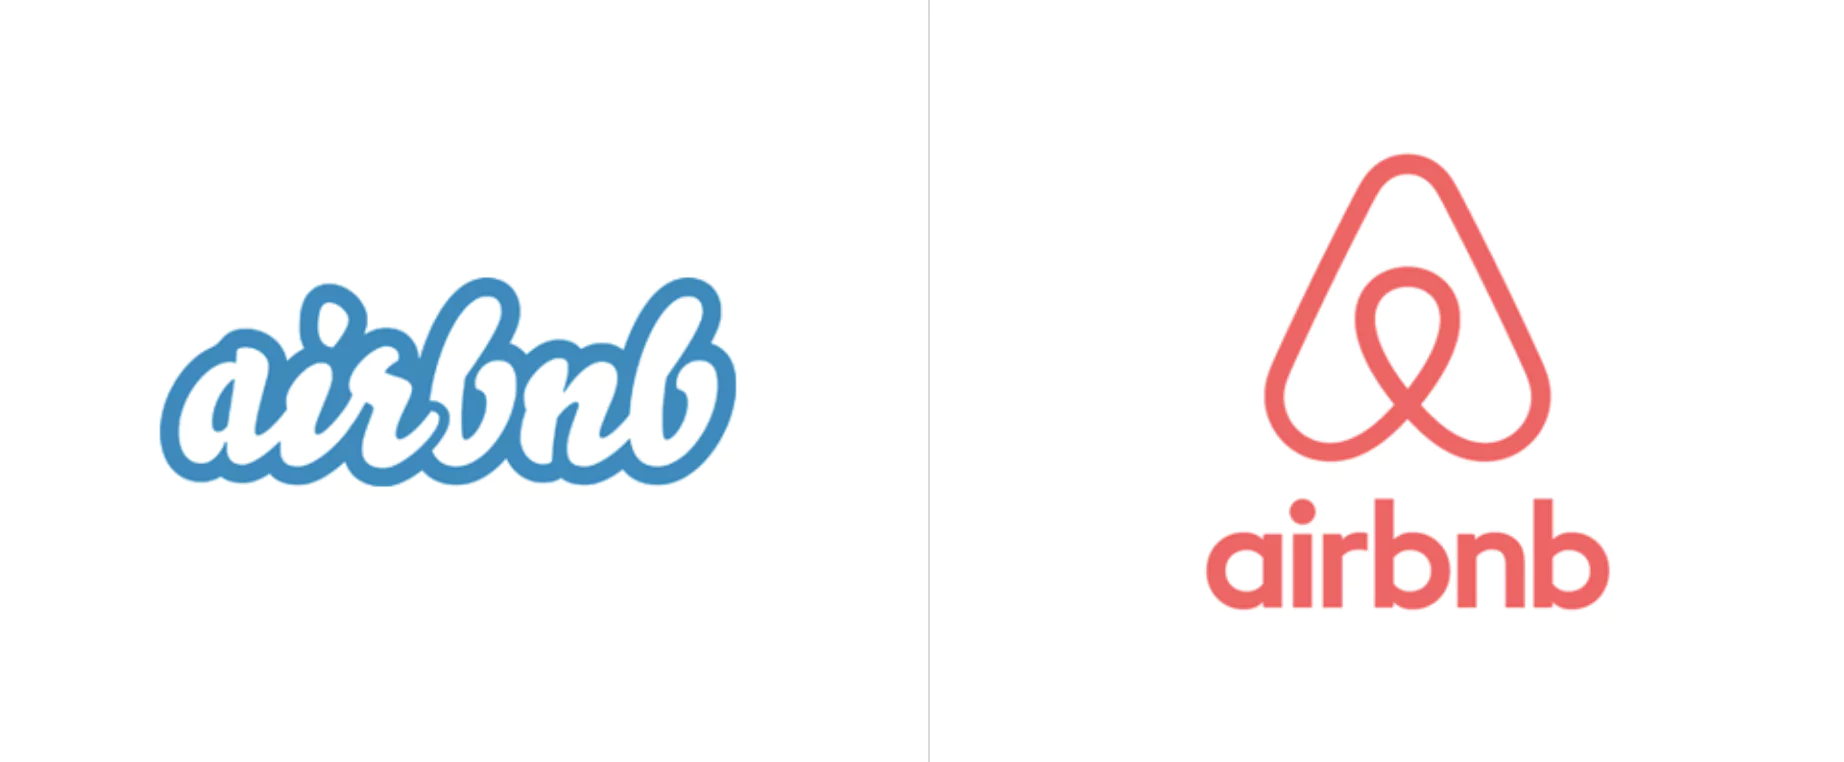 Airbnb-logovergelijking: oud wit/blauw logo aan de linkerkant, nieuw roze/rood logo aan de rechterkant met een hart-huissymbool